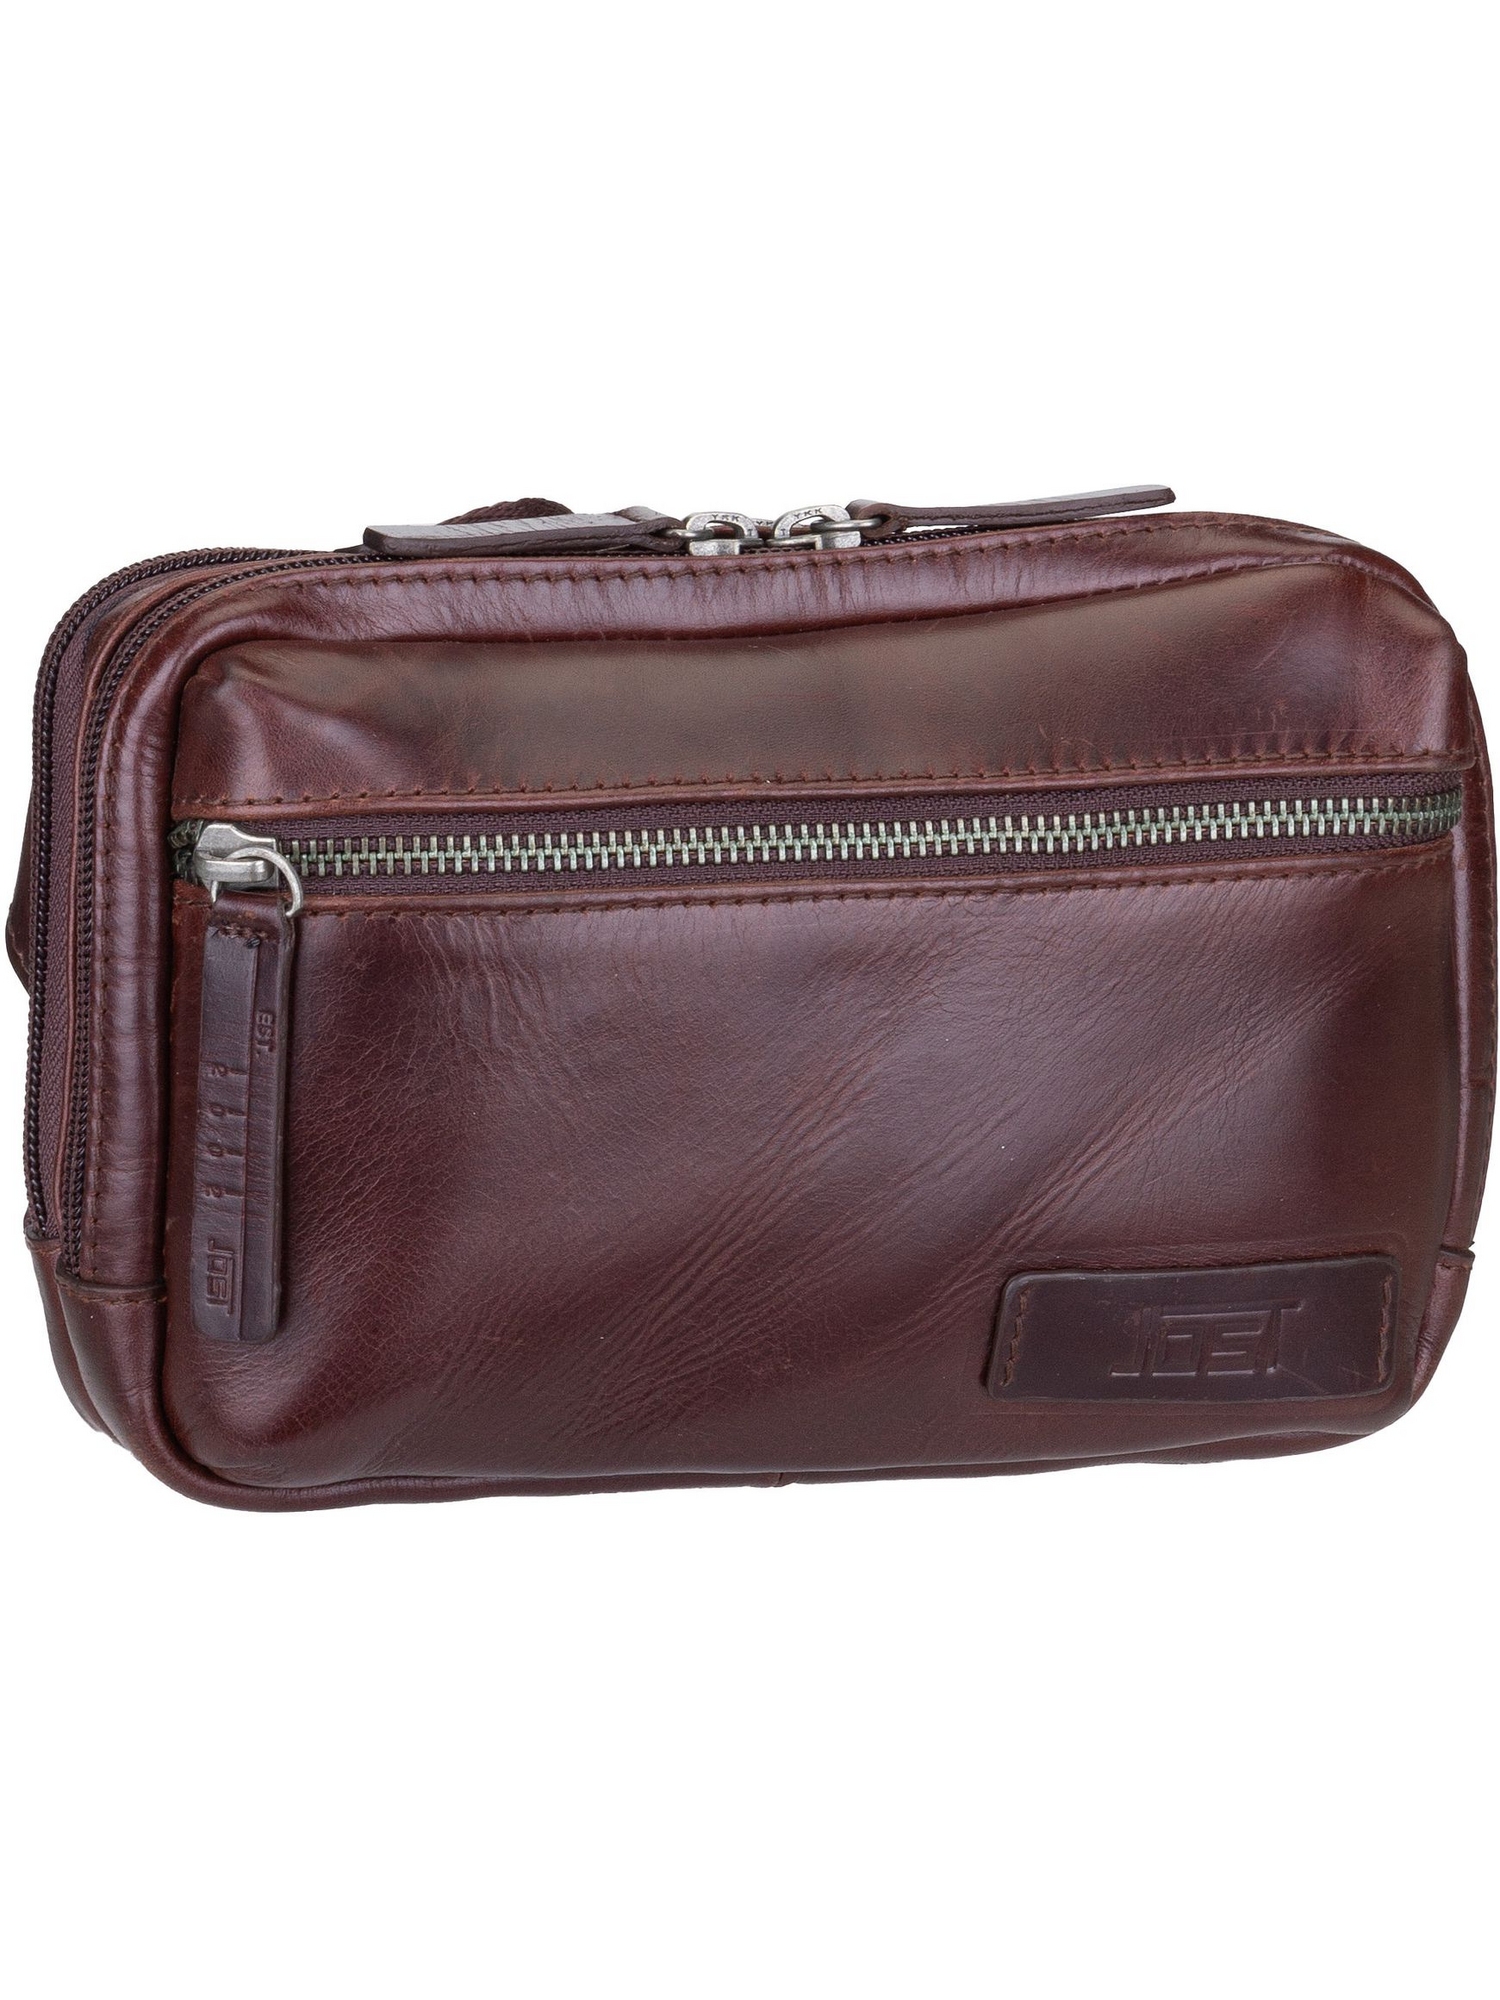 Рюкзак Jost Sling Bag Trelleborg 9050, коричневый